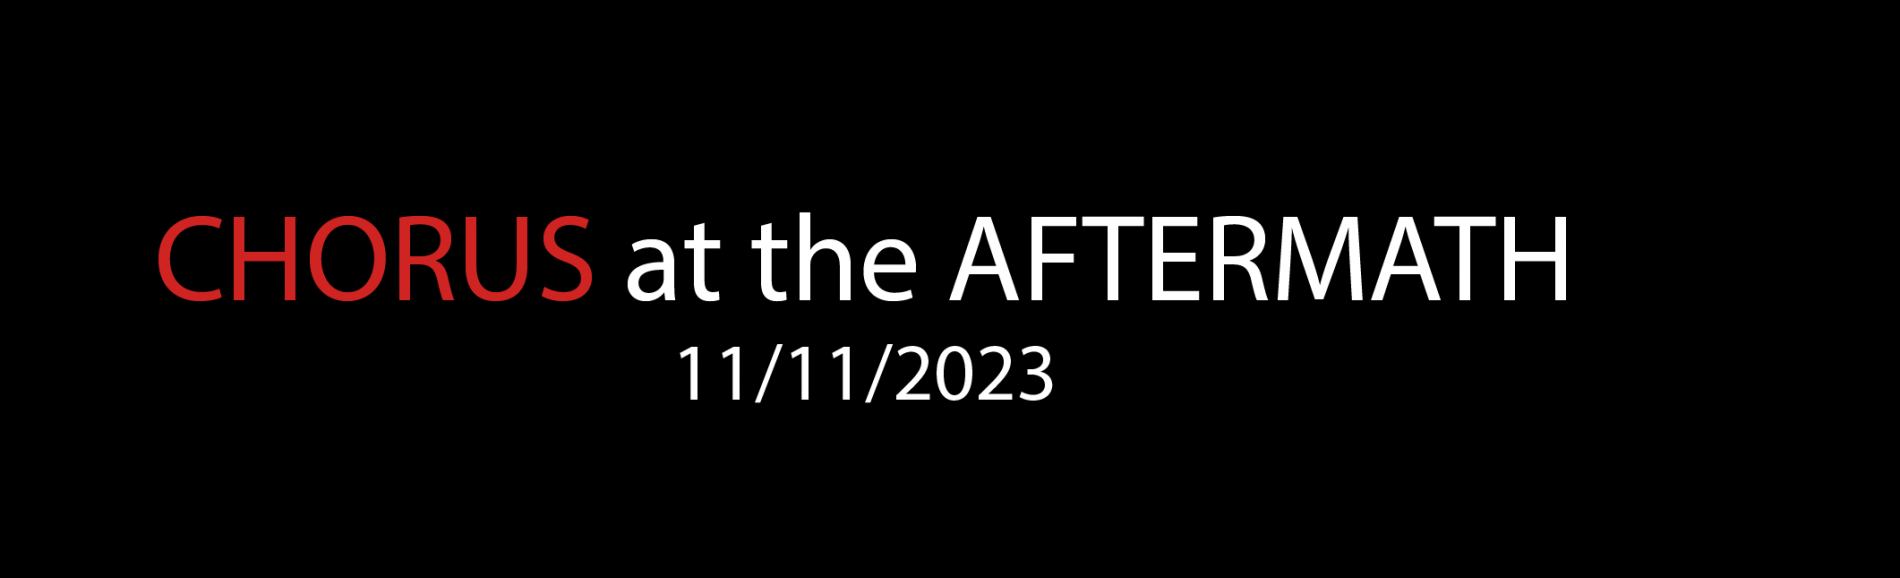 CHORUS AT THE AFTERMATH 11/11/2023